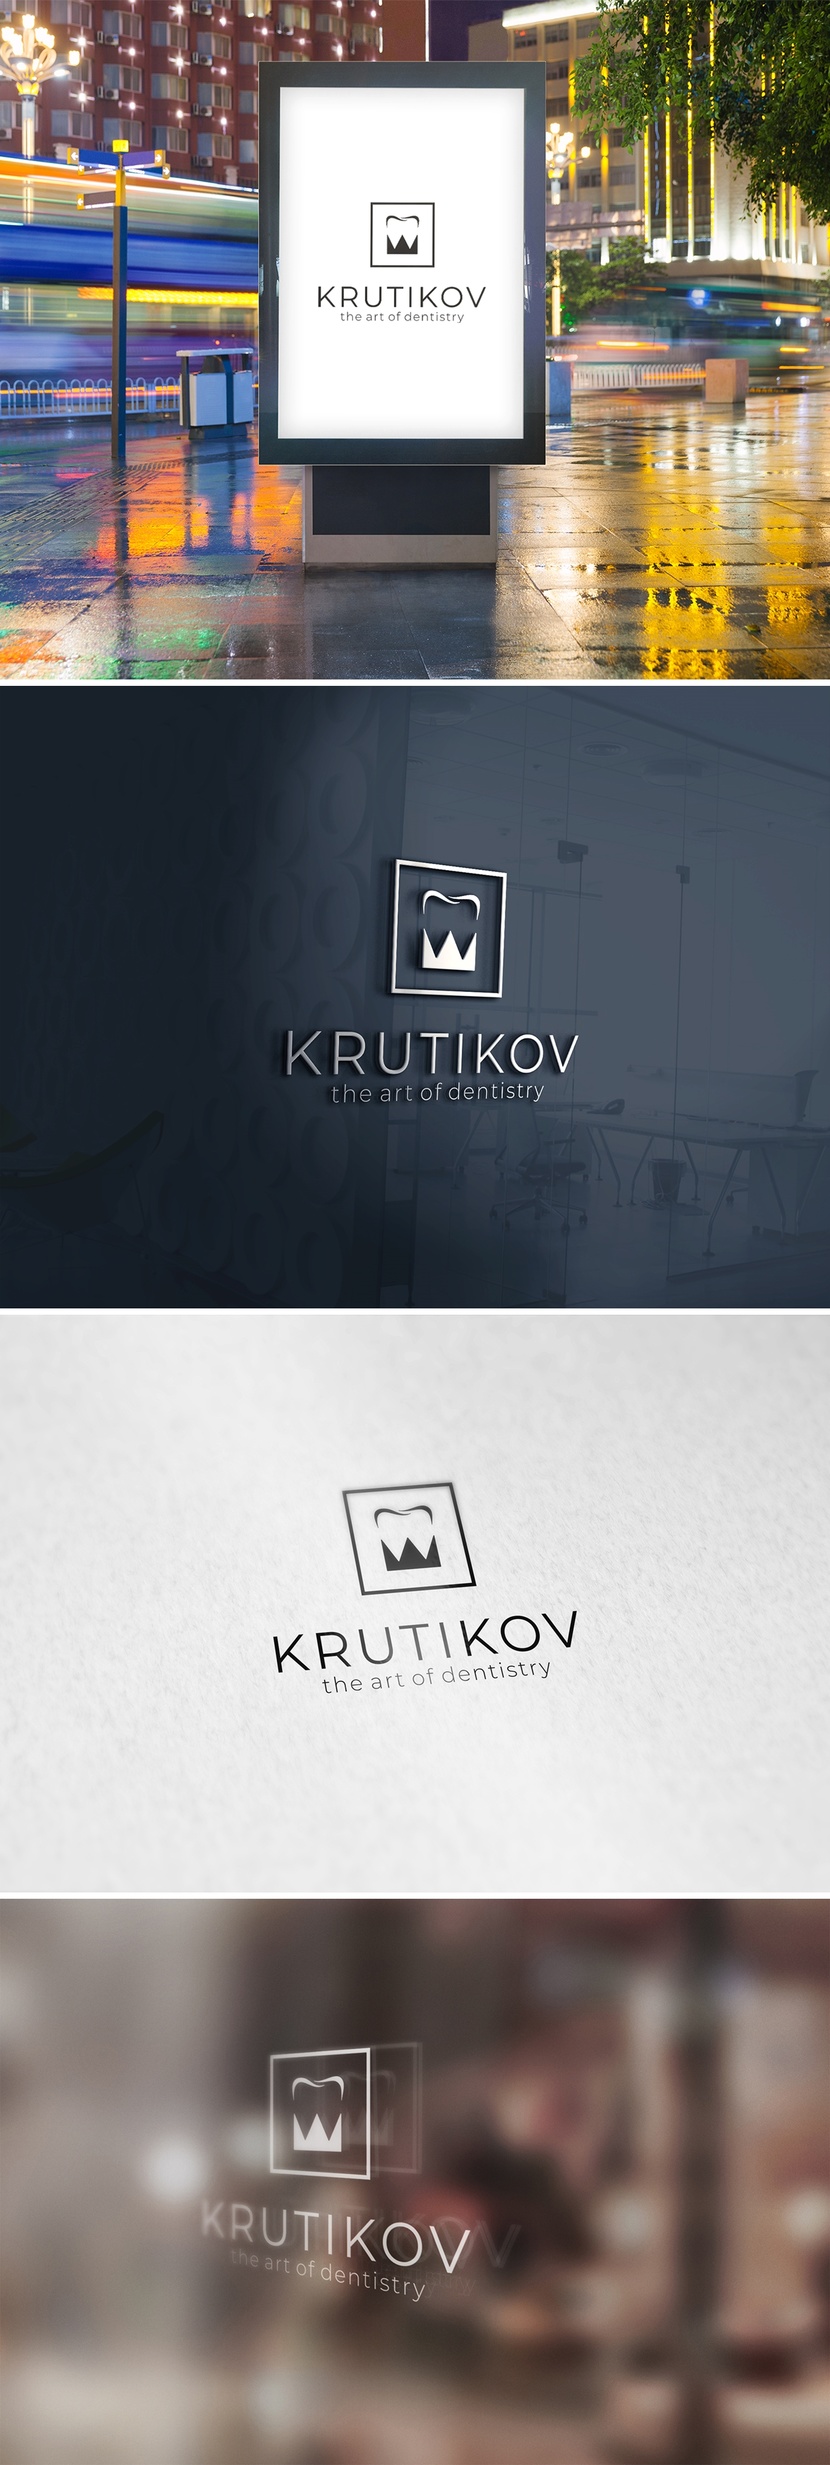 KRUTIKOV - Логотип